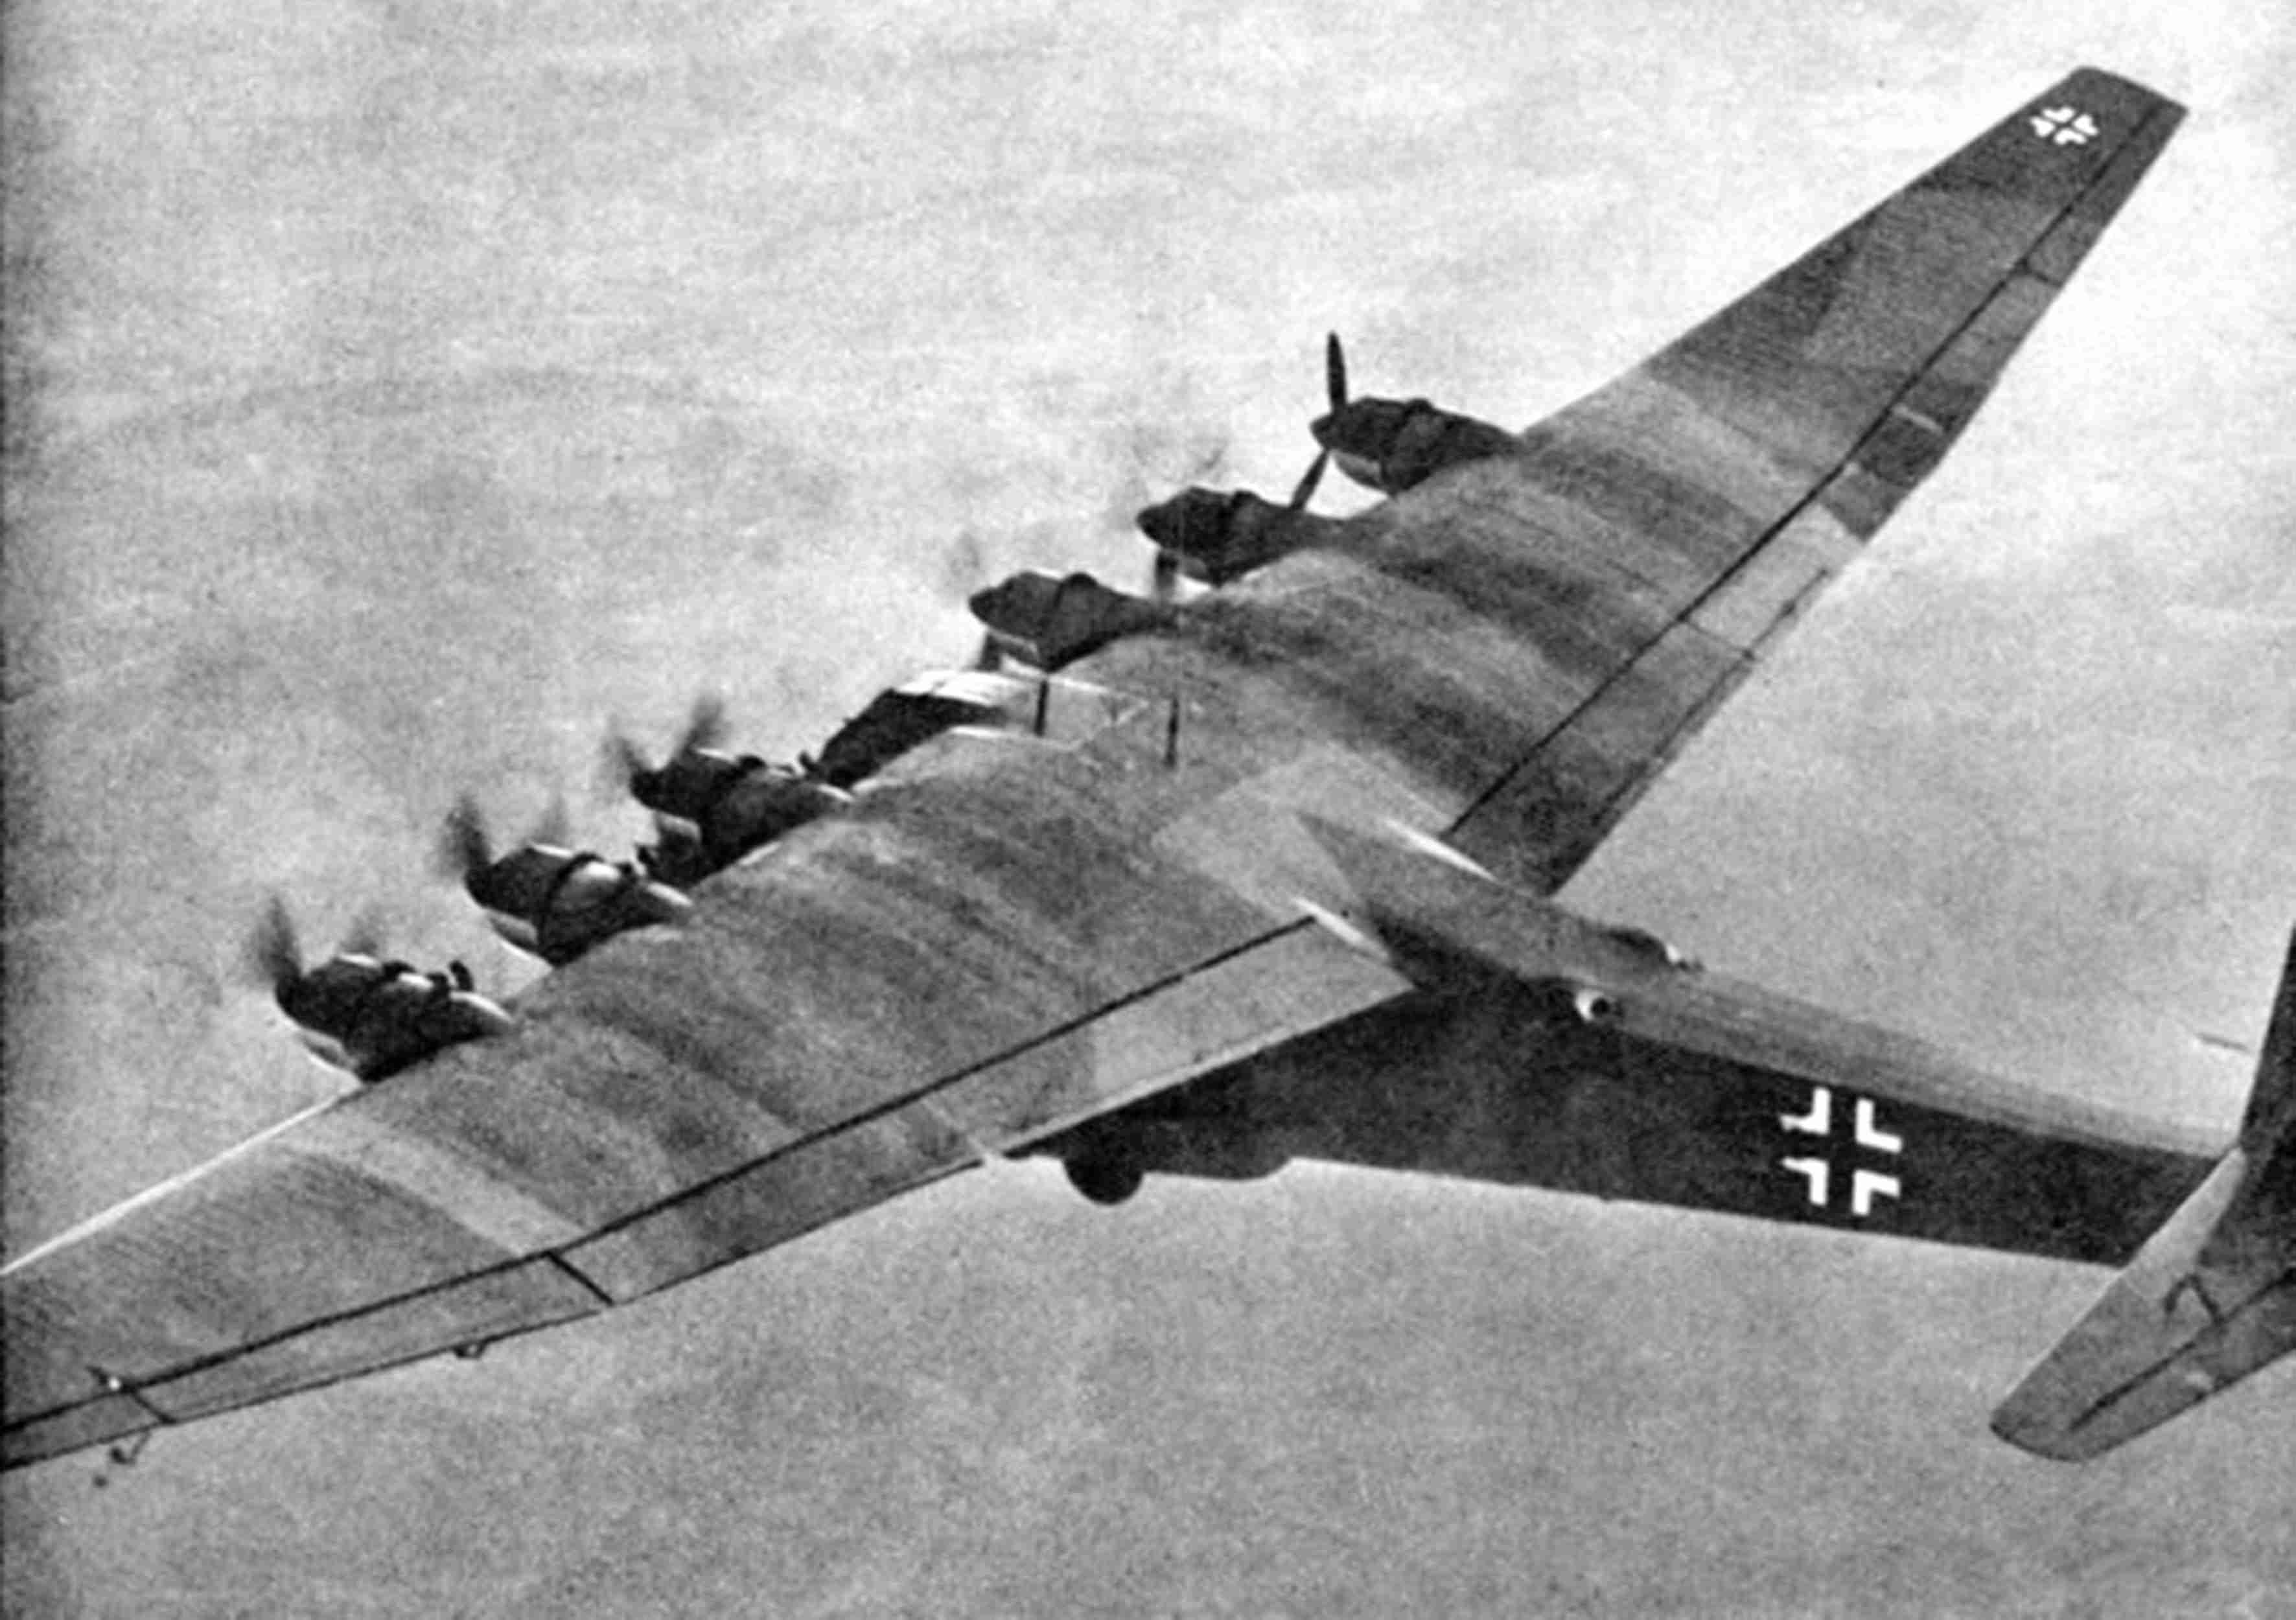 Scoperto il relitto di un Messerschmitt Me 323 Gigant abbattuto nelle acque dell’arcipelago della Maddalena nel 1943.